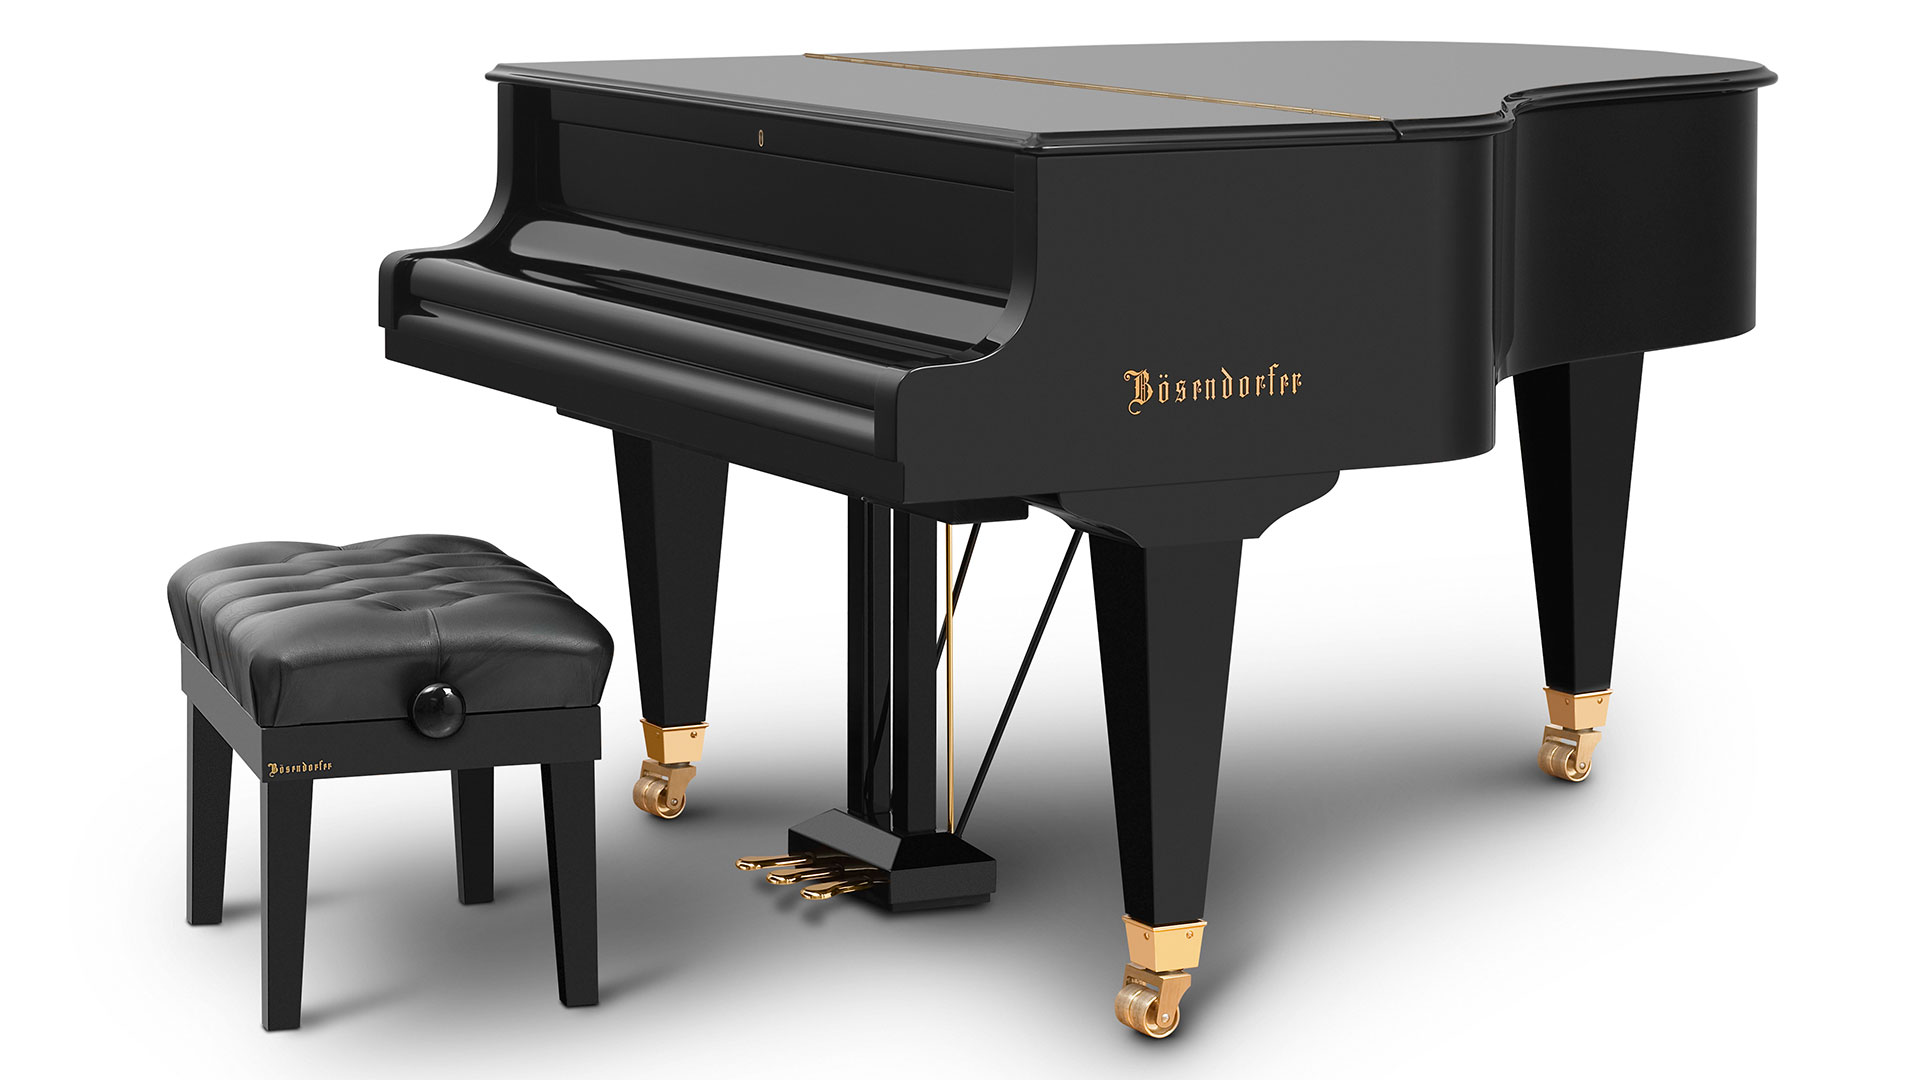 Bosendorfer piano Model 170-vc baby grand piano